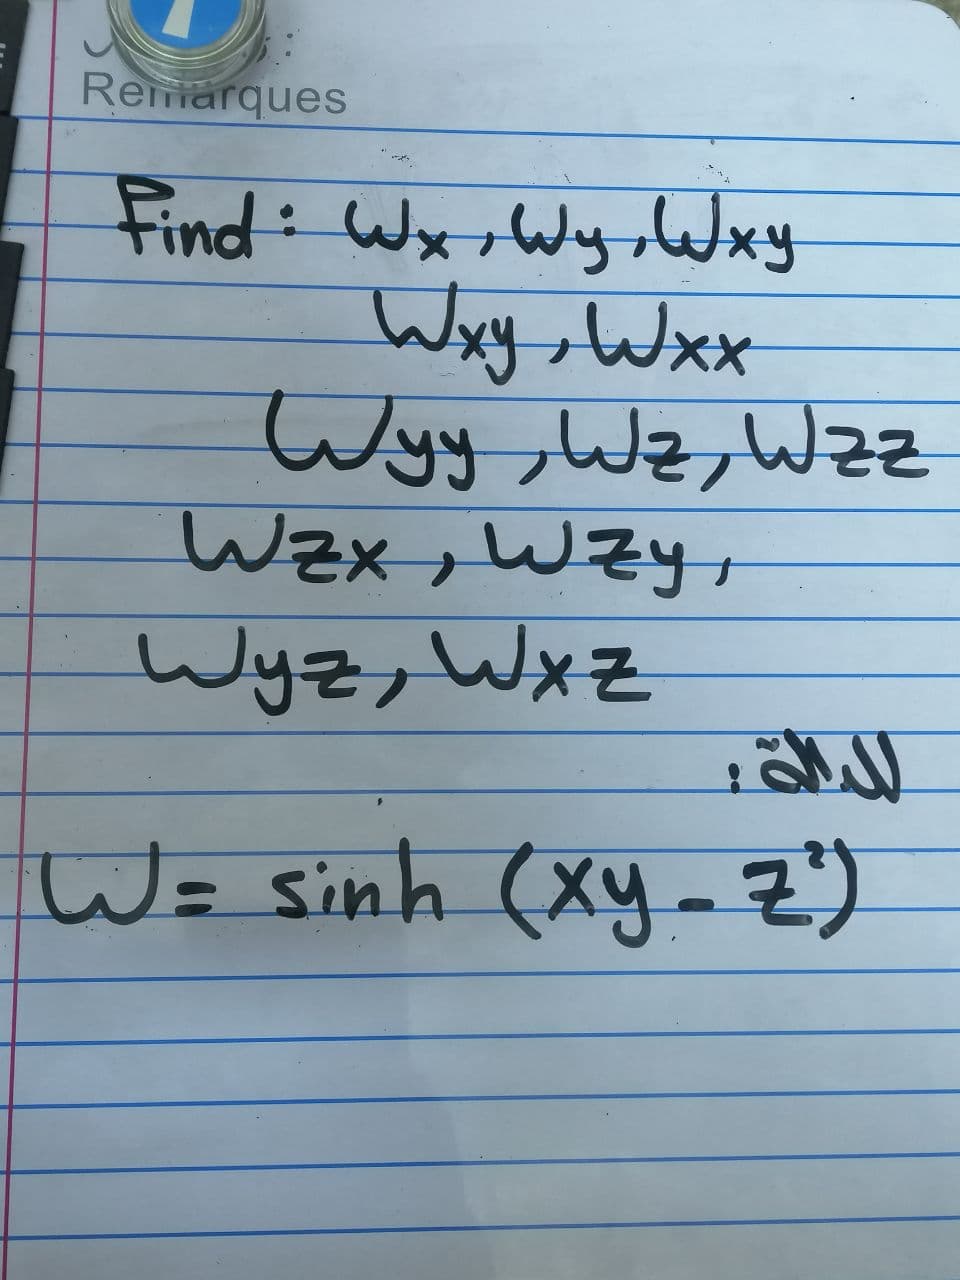 Remarques
Find: Wx,Wy,Wxy
Wxy,Wxx
Wyy,Wz, Wzz
Wzx, WZy
Wyz, Wxz
W= sinh (xy -Z")
